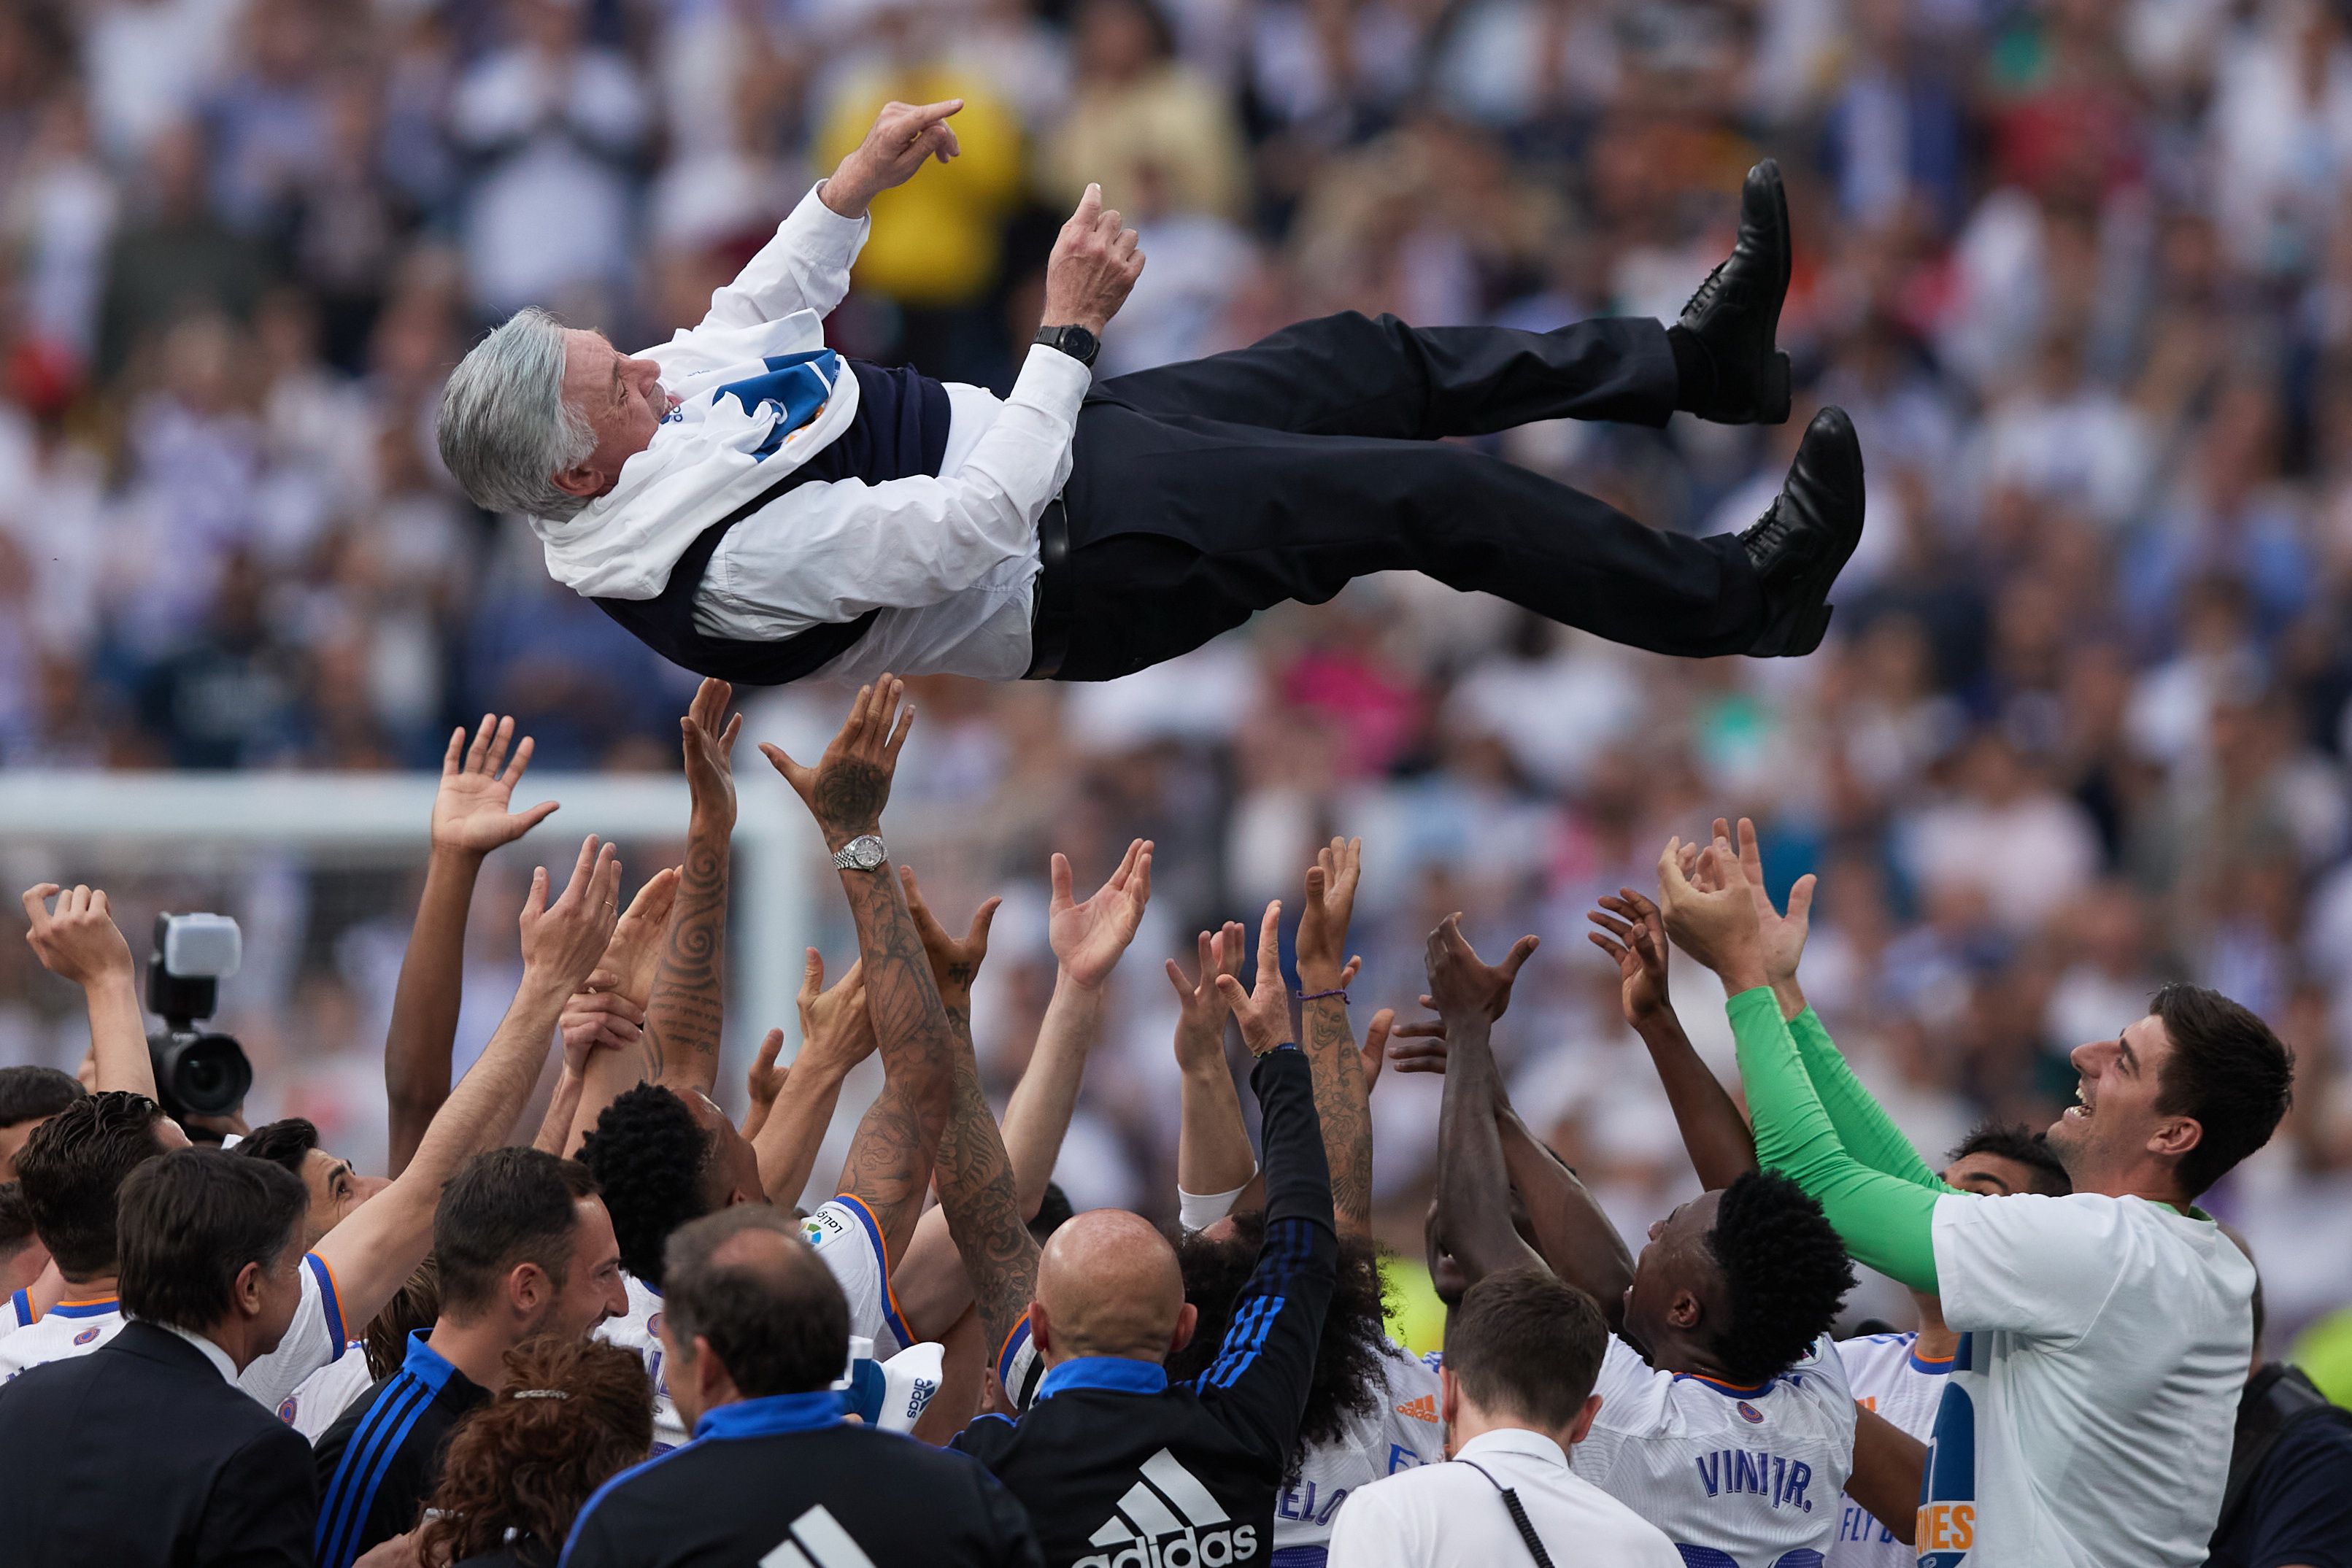 Ancelottit az öt legerősebb európai bajnokság mindegyikében ünnepelték már / Fotó: Getty Images